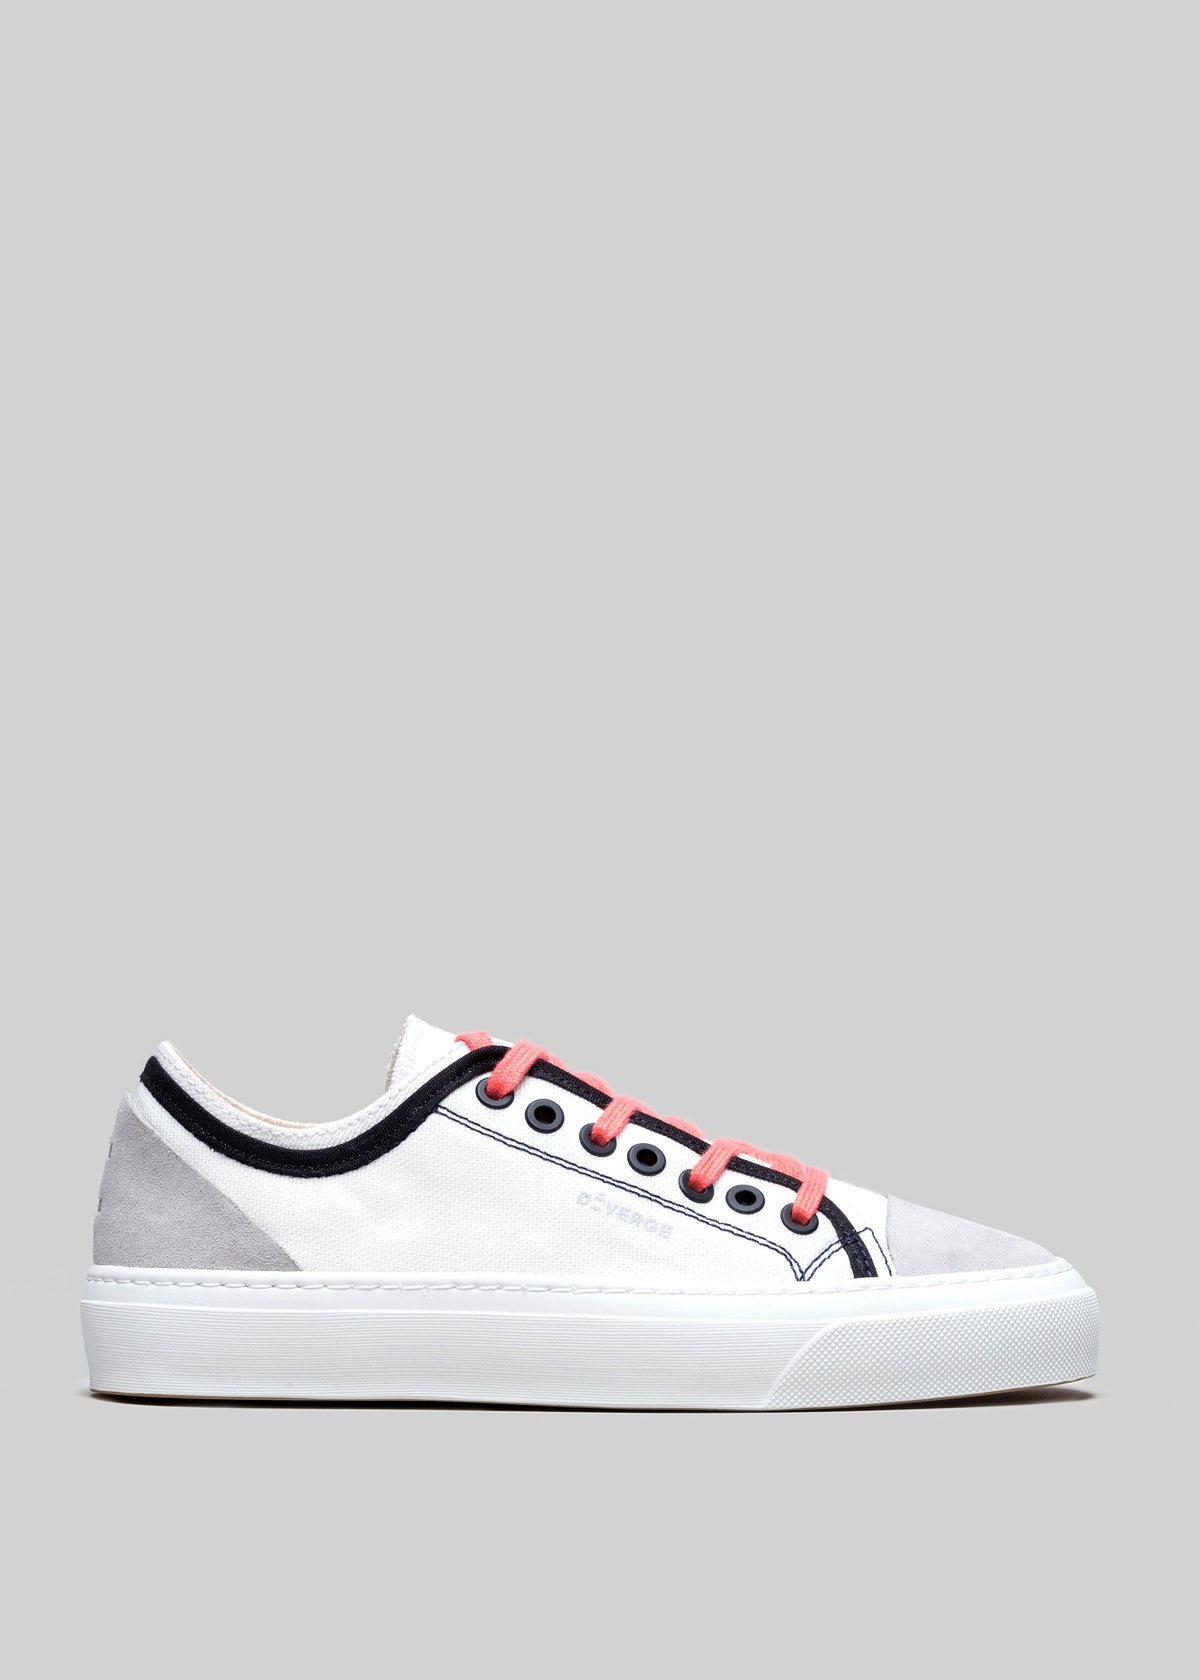 weißes und geraniumfarbenes Premium-Leinwandmaterial mit mehreren Lagen, sneakers Seitenansicht